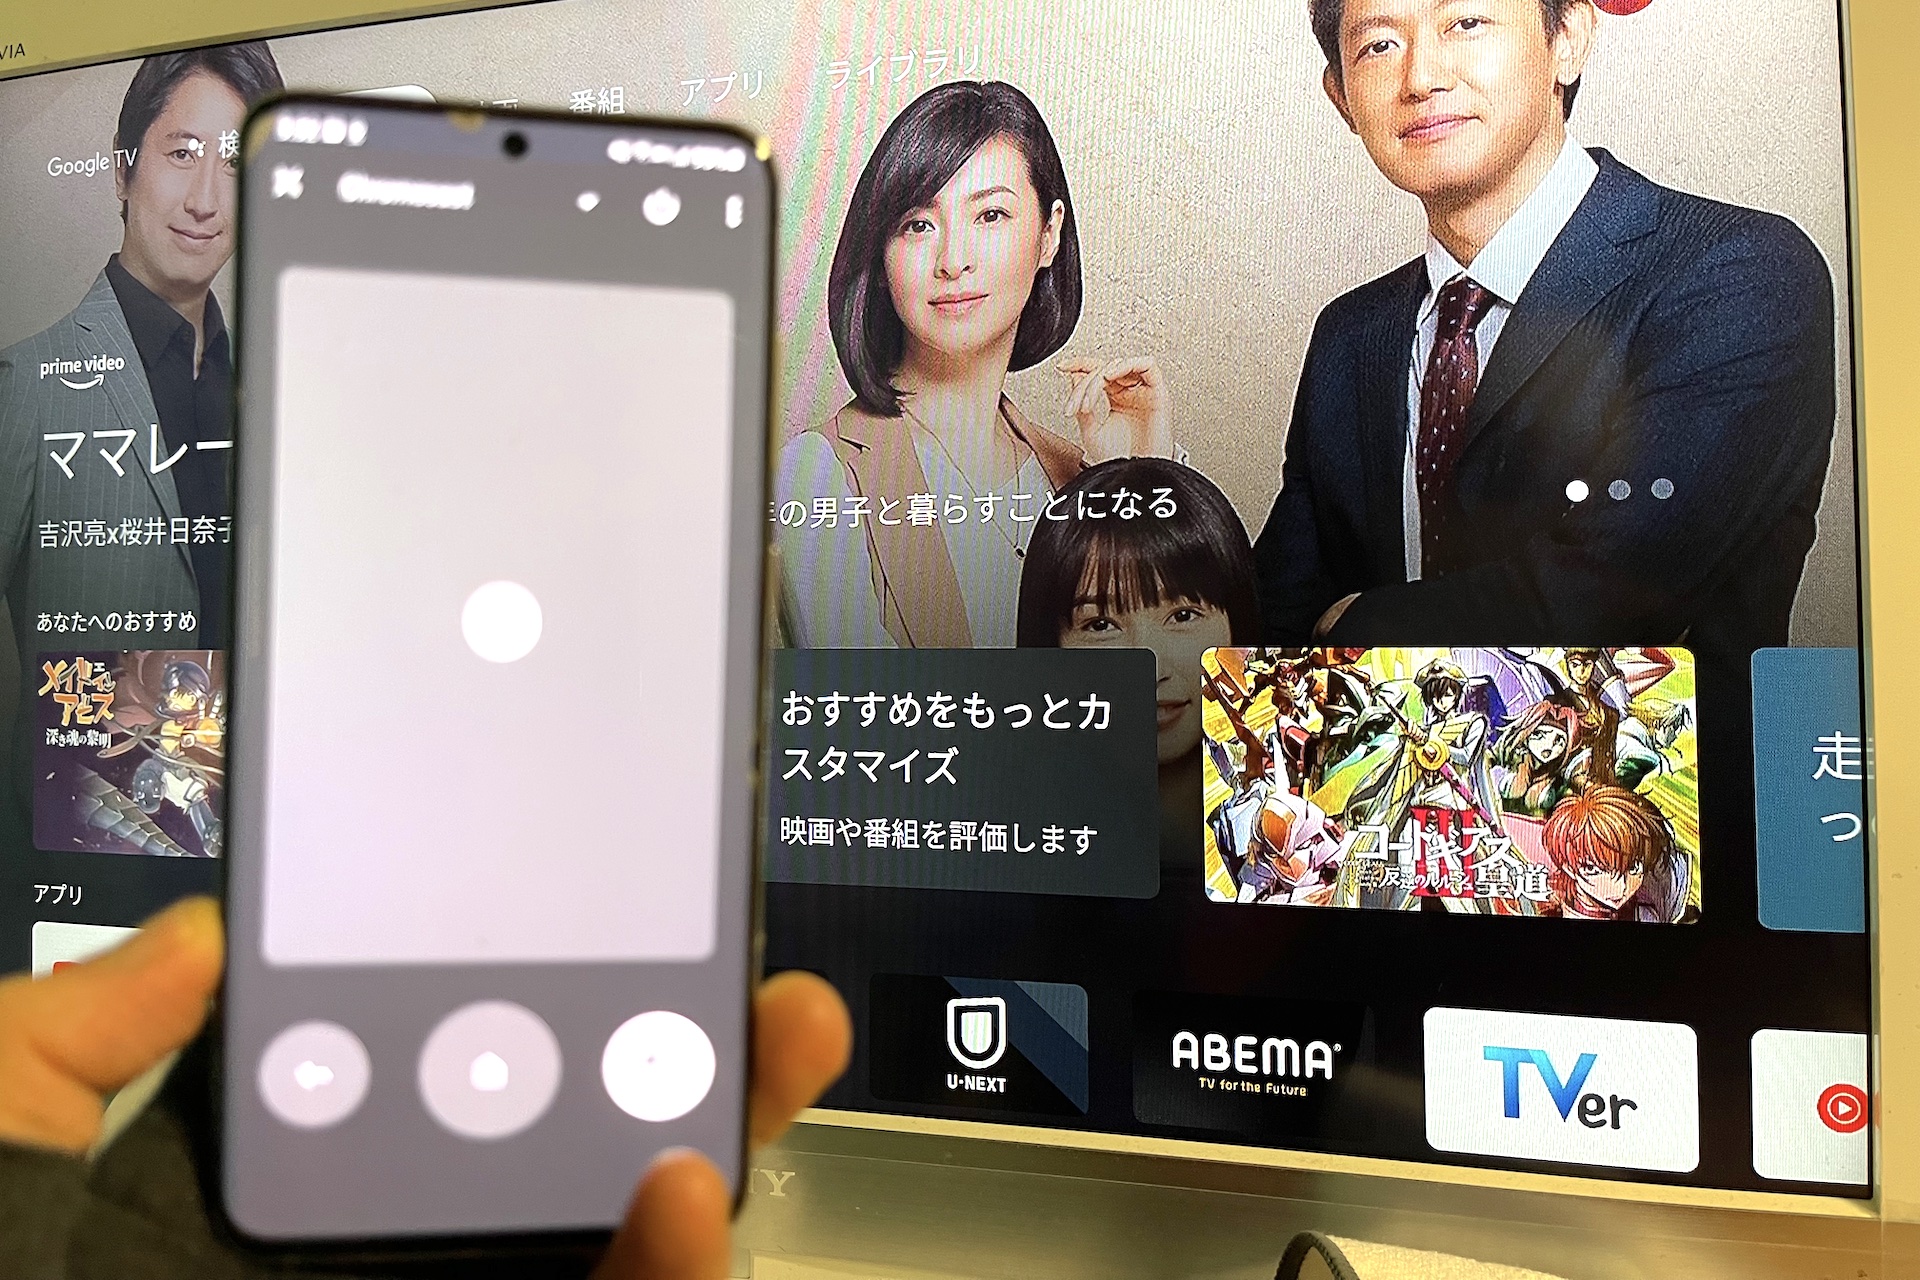 Androidスマホをgoogle Tvやandroid Tv搭載テレビのリモコンにできる機能が日本でも利用可能に Google Play ムービー Tvはgoogle Tvアプリに S Max